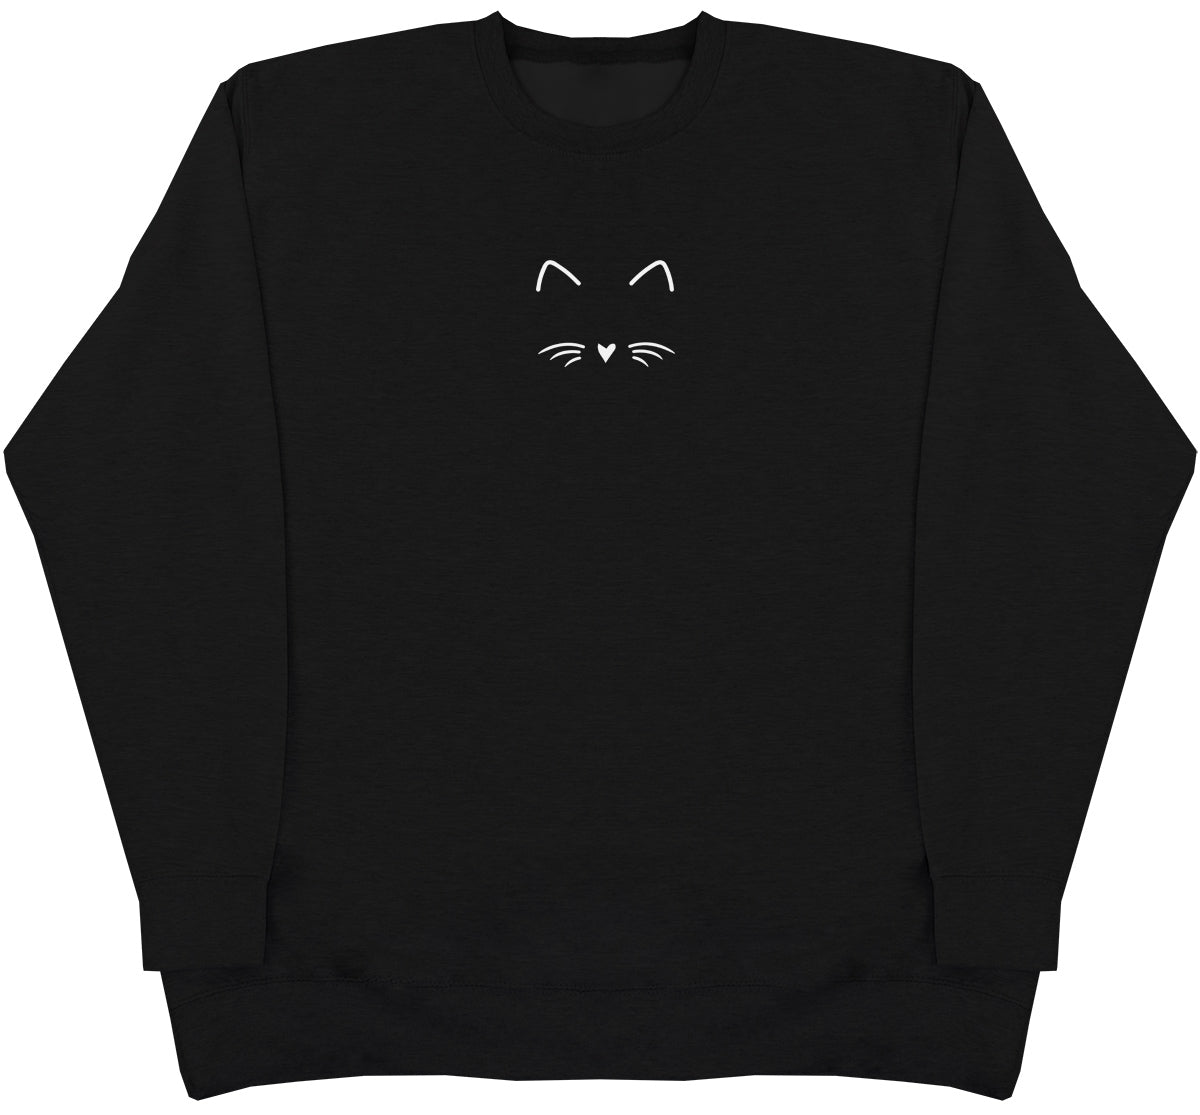 Cat Face - Huge Oversized Comfy Original Sweater